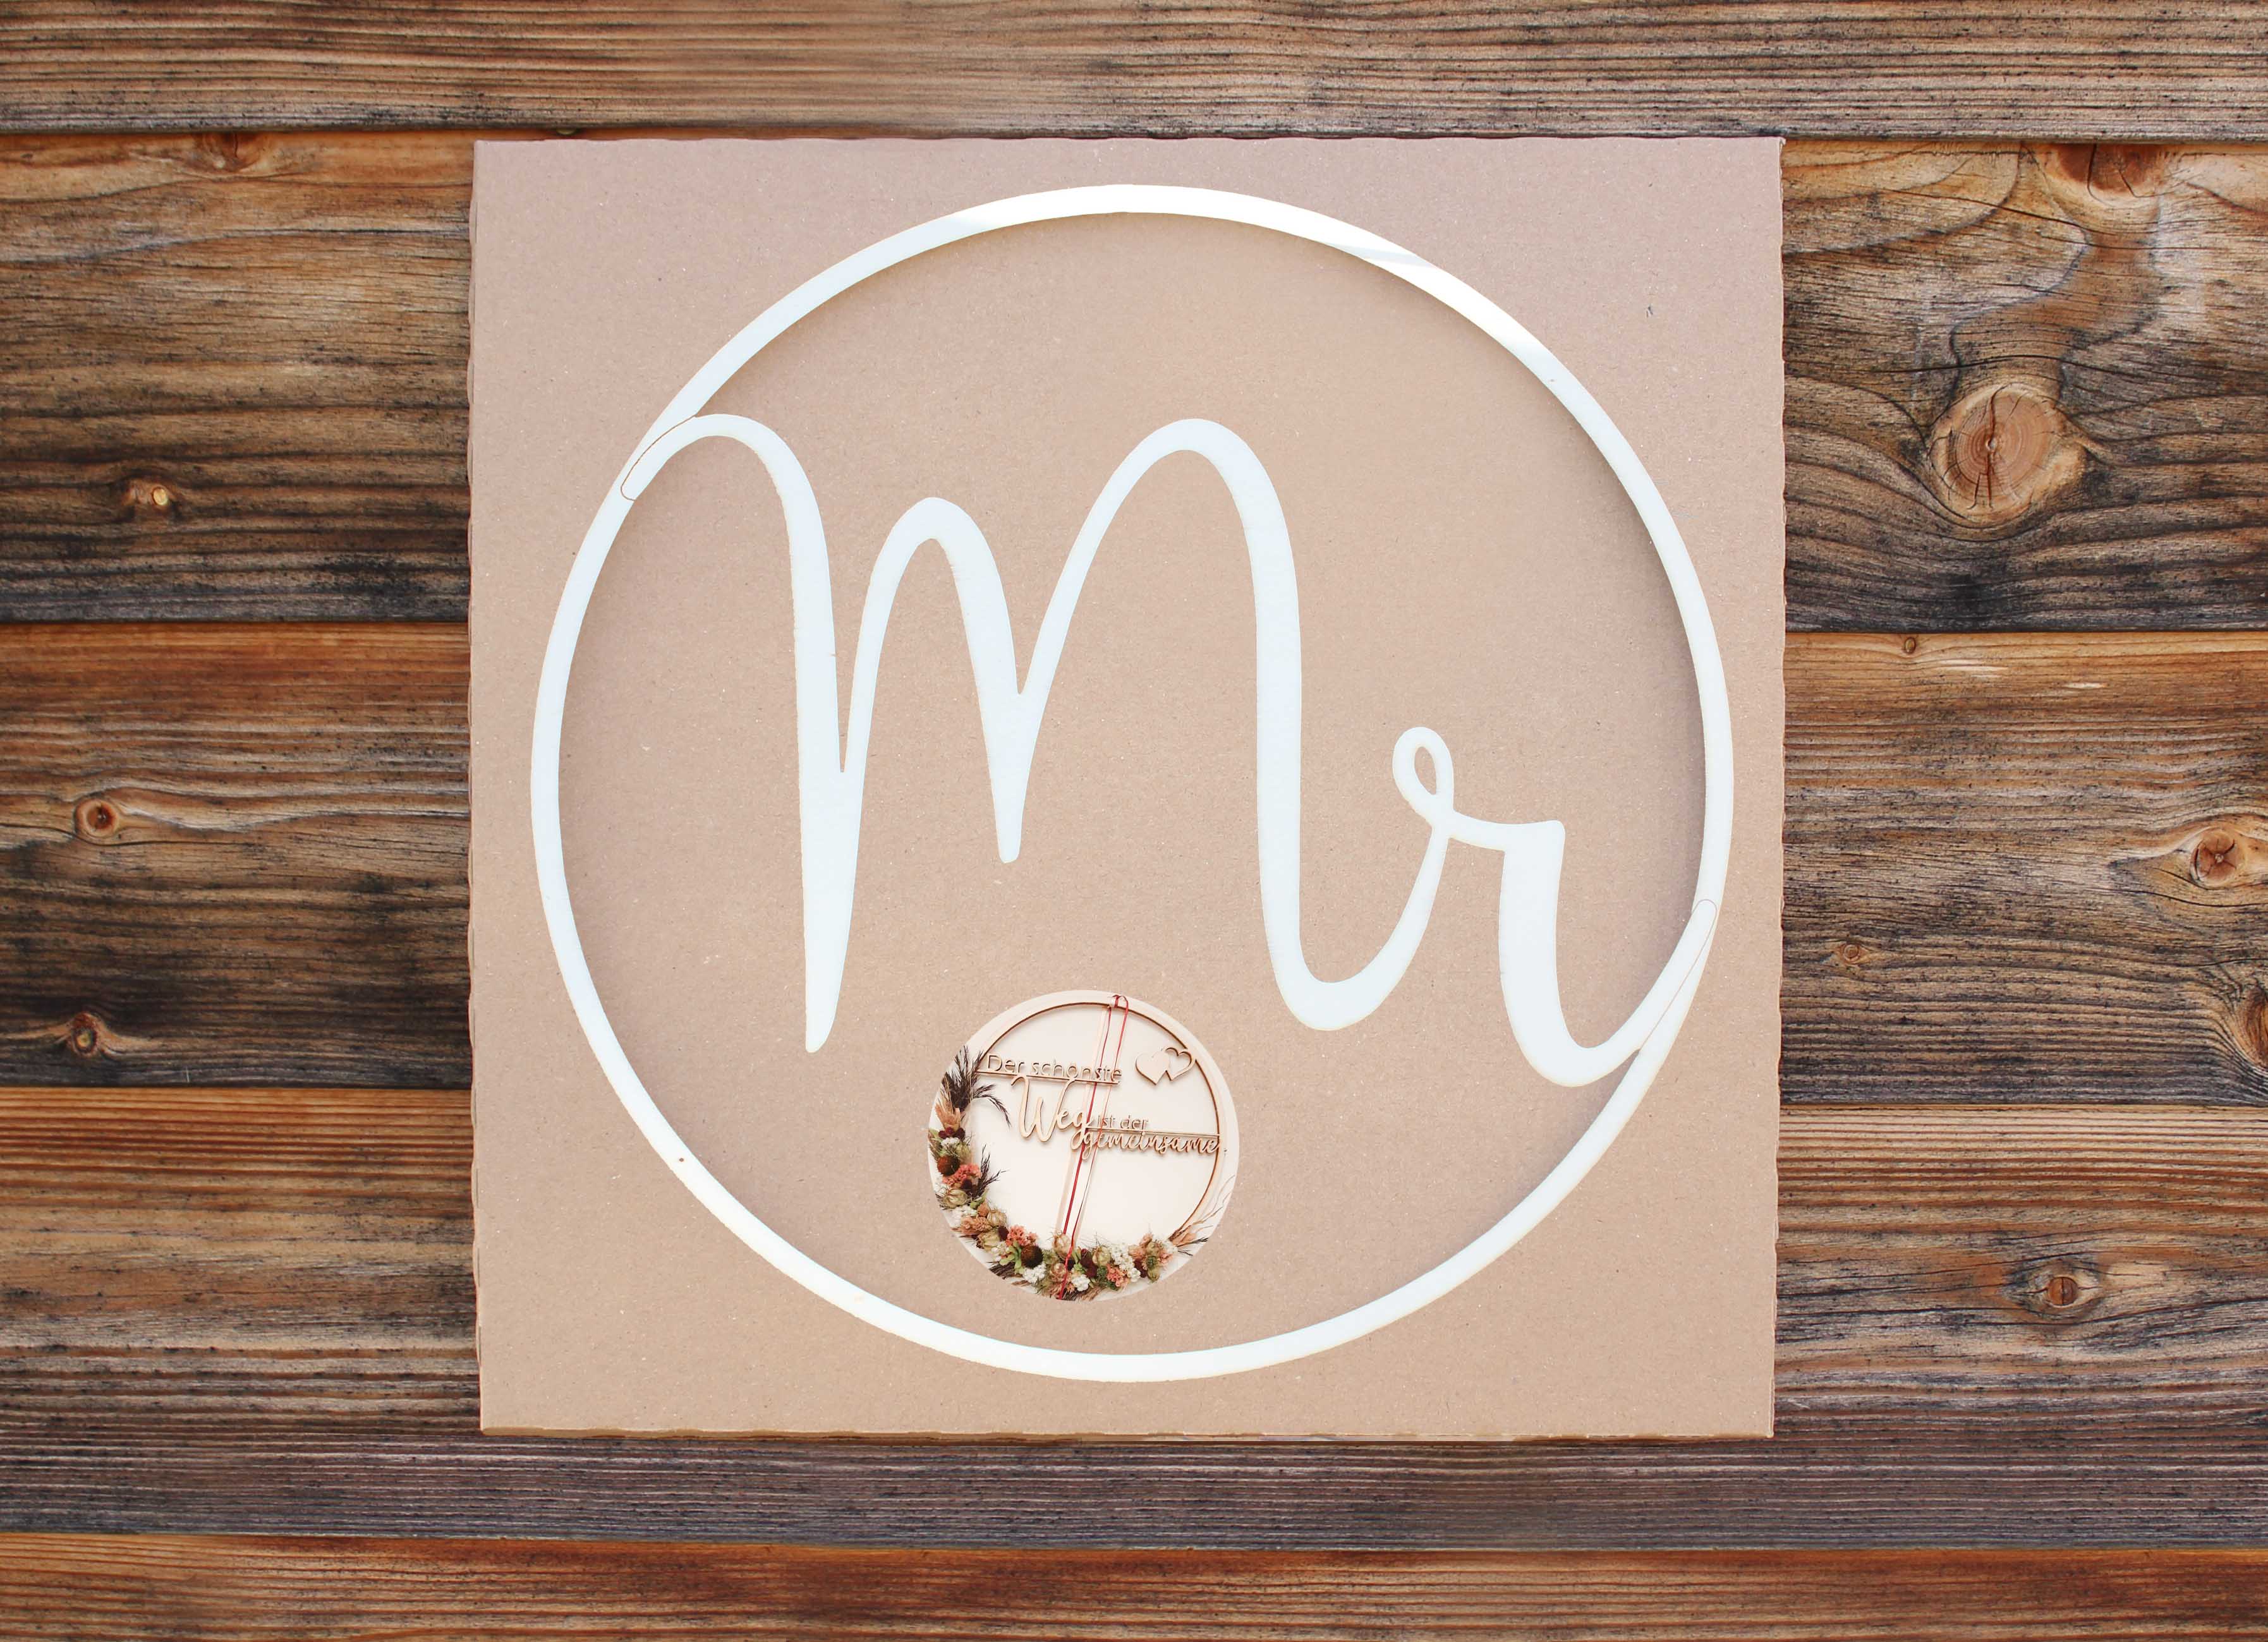 Holzgrusskarten - Holzkranz mit Schriftzug "Mr" aus Pappelholz, Holzring, Tür, Deko, Geschenk, Hochzeit